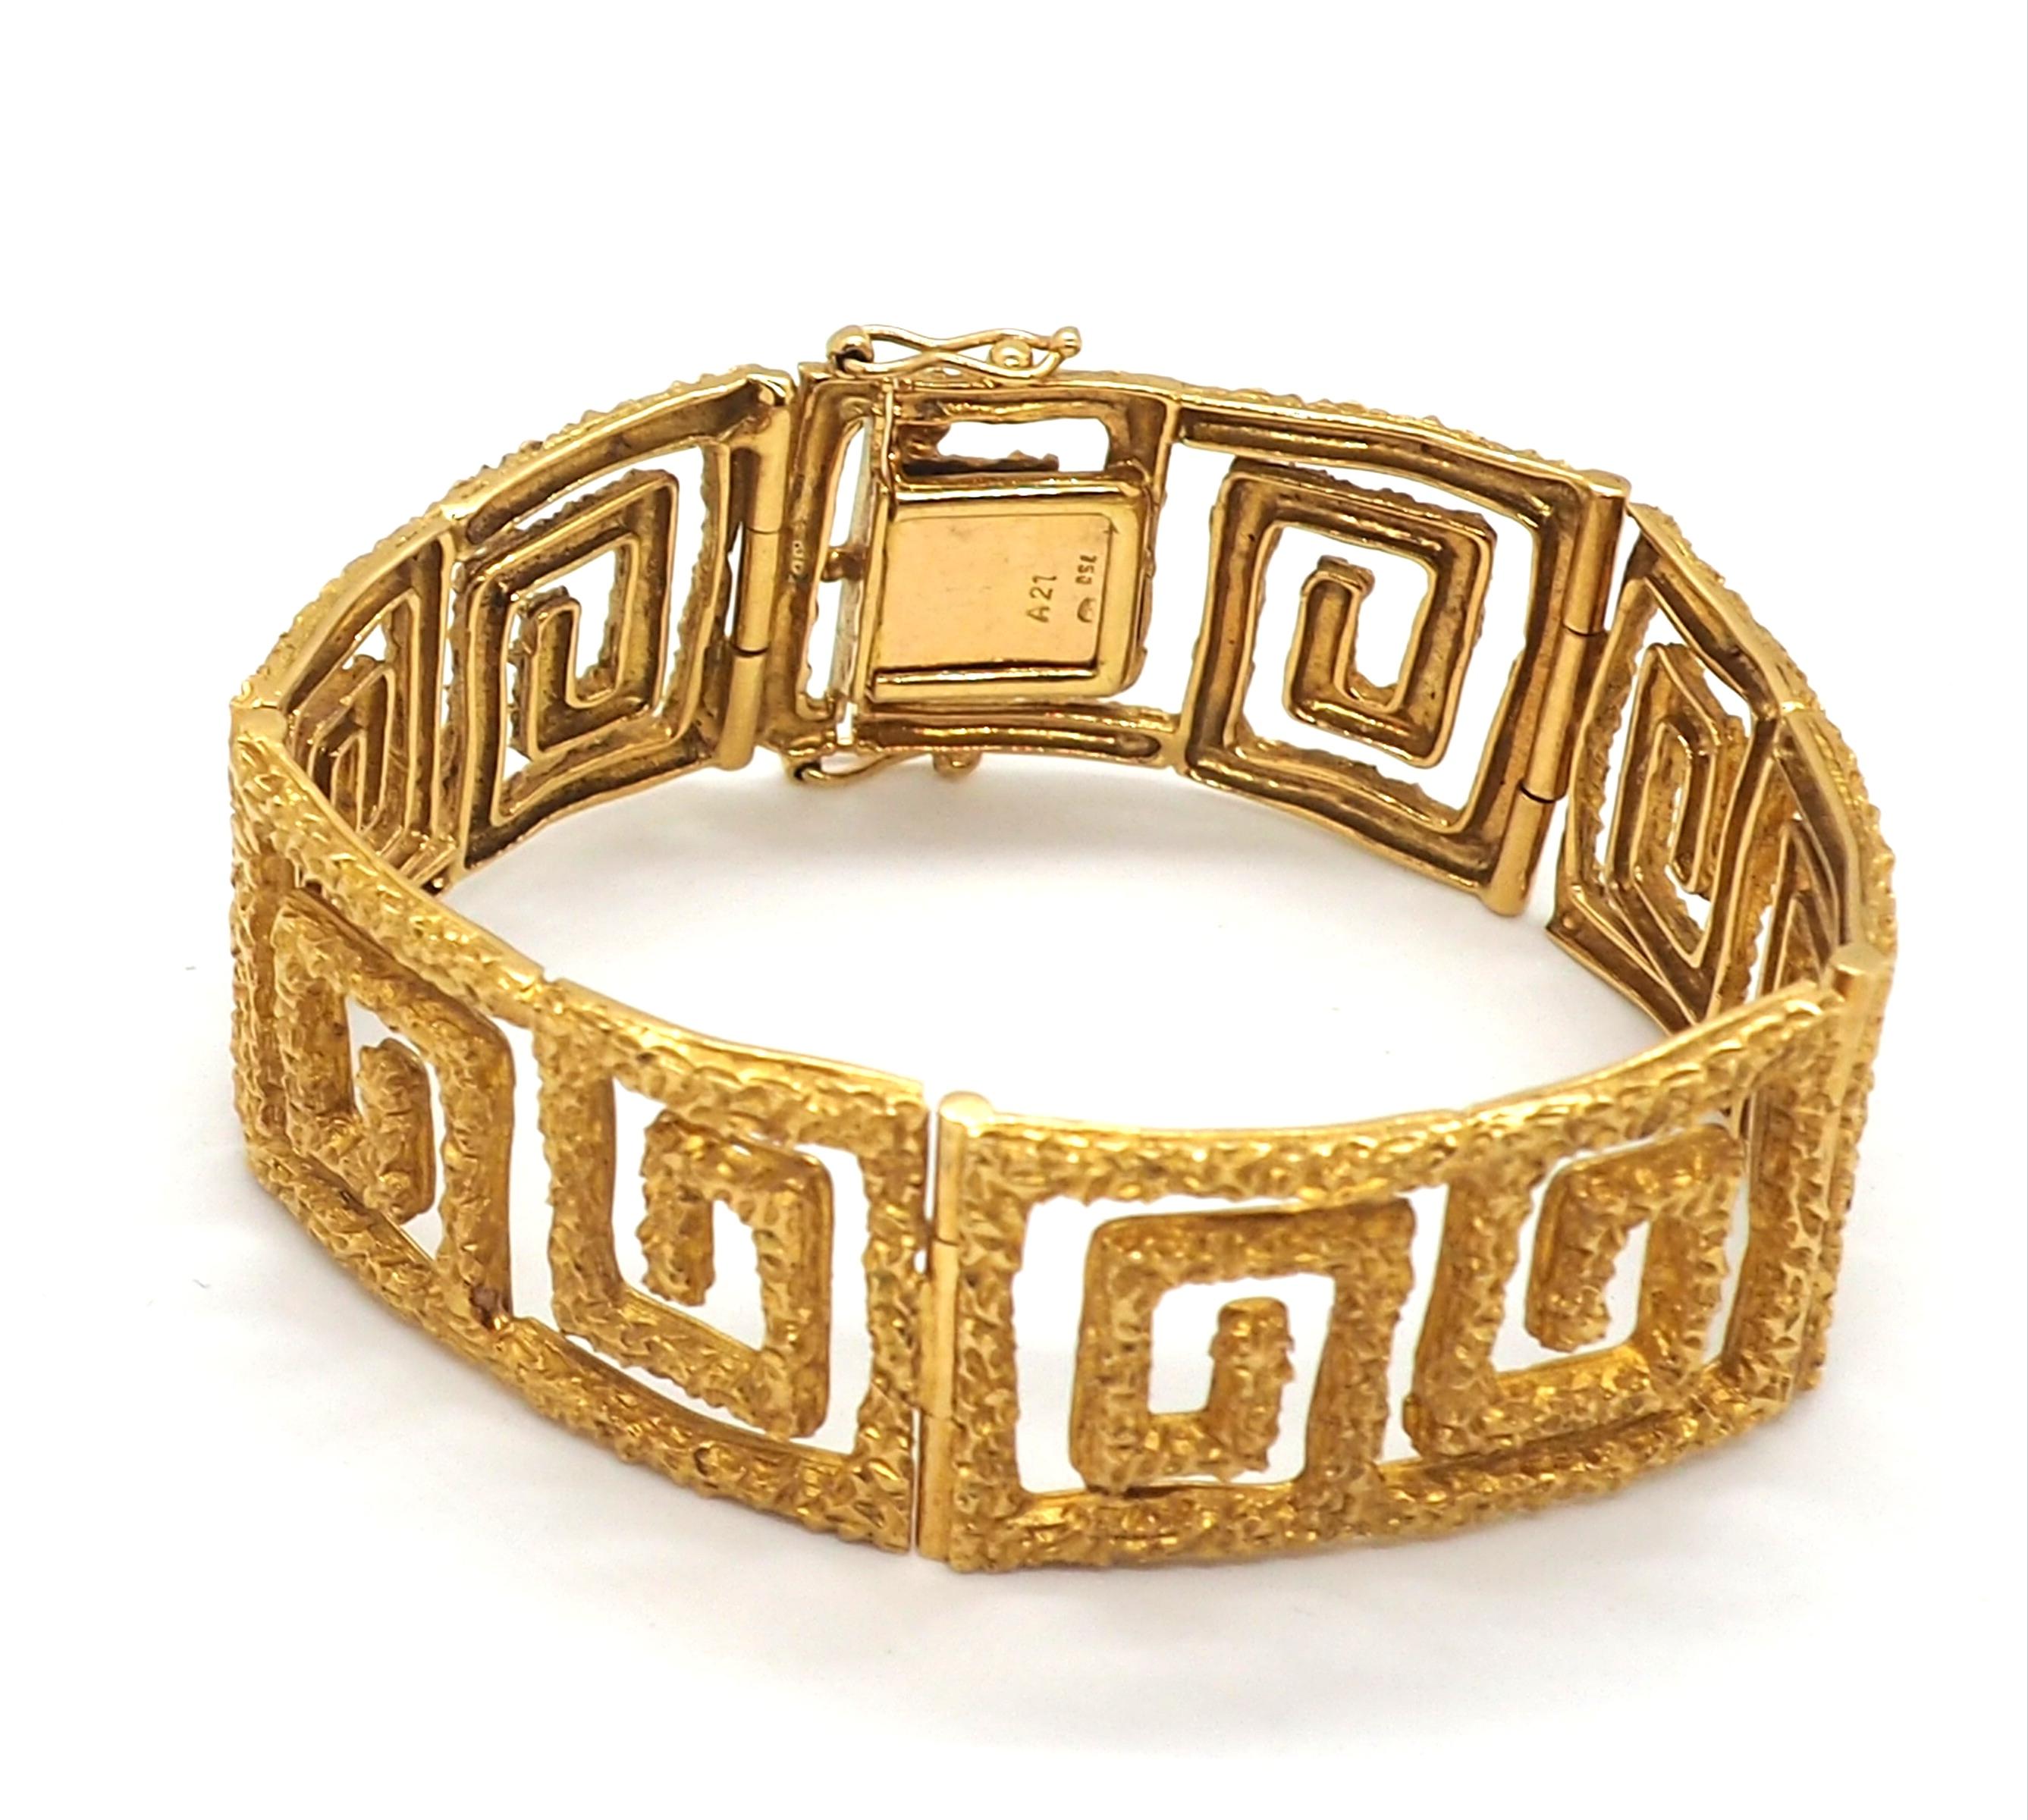 Ein außergewöhnliches Manschettenarmband aus 18 Karat Gelbgold, das sorgfältig in einem fesselnden Mäander, auch bekannt als griechisches Bunddesign, gearbeitet ist. Dieses Armband ist nicht nur ein Schmuckstück, sondern auch ein Symbol für Erbe und